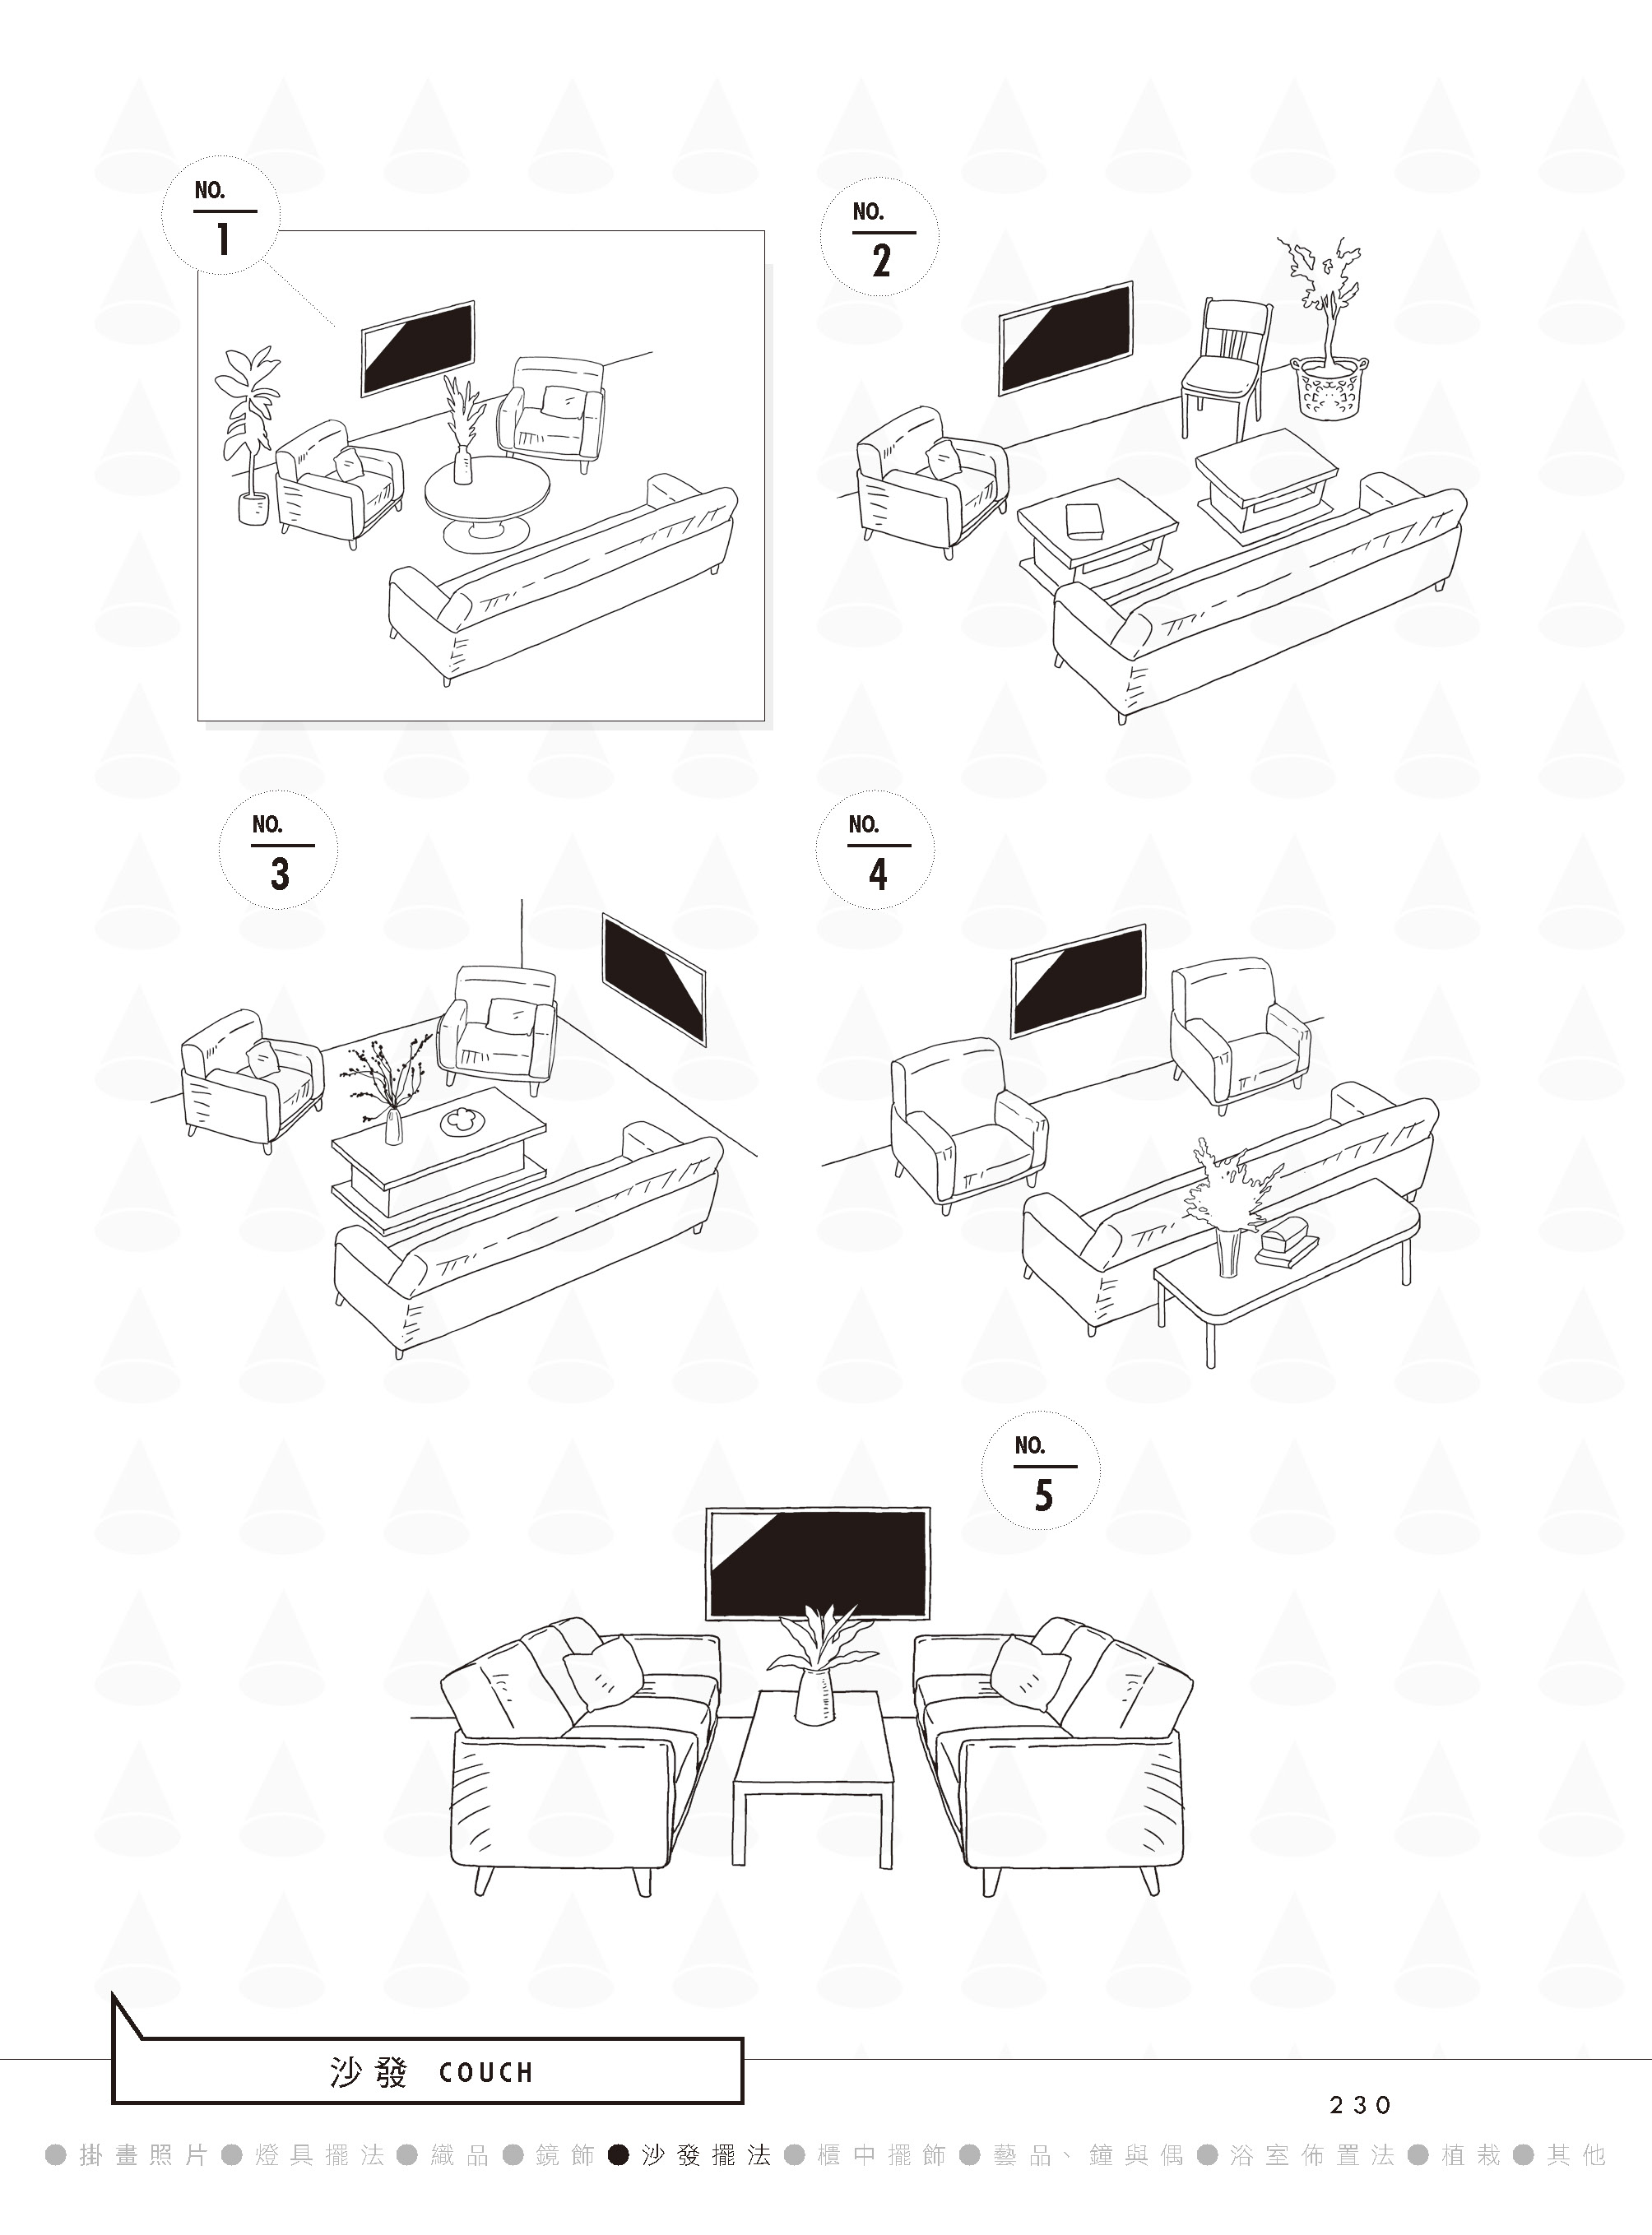 傳統形式的沙發擺法就是所謂1＋2＋3，運用三種同款式但不同規格的沙發座位來排列。但現在則更常見不同款的形式組合。（圖片來源／出色文化）